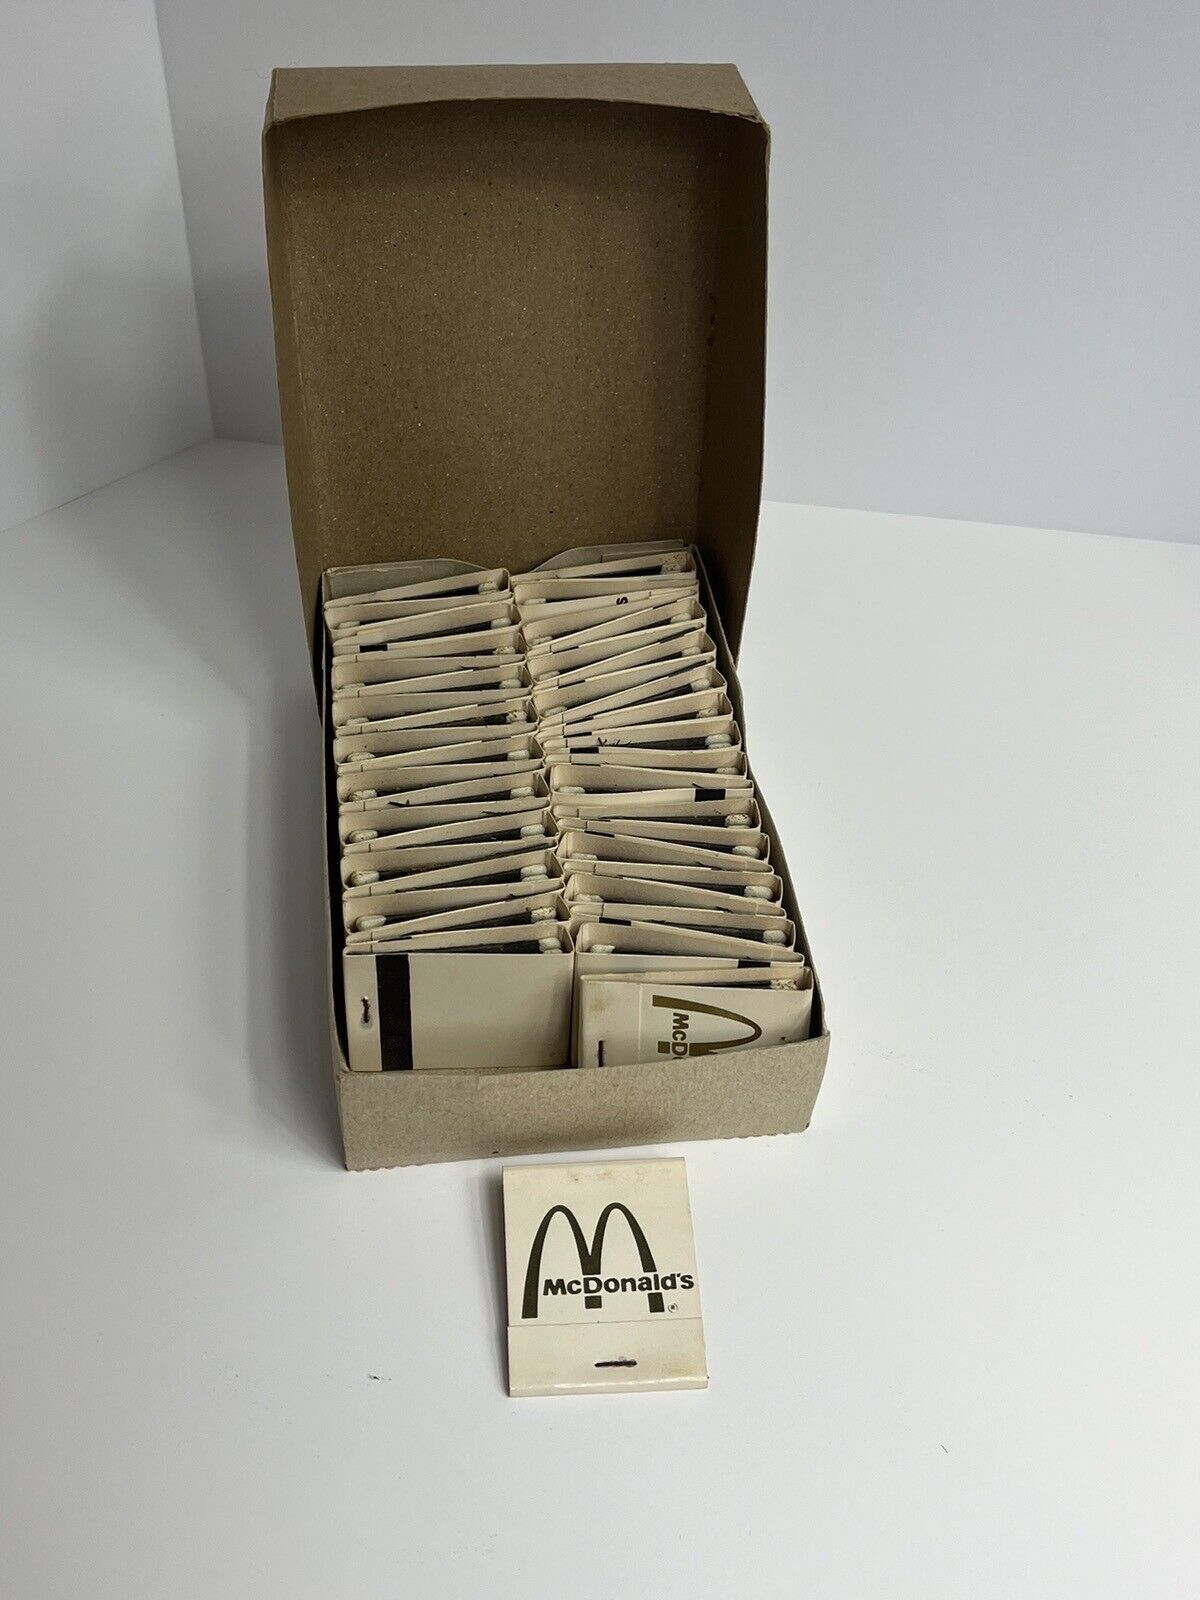 40 McDonald’s Matches/Match Books In Original Box ~Unused ~ Vintage ~ RARE